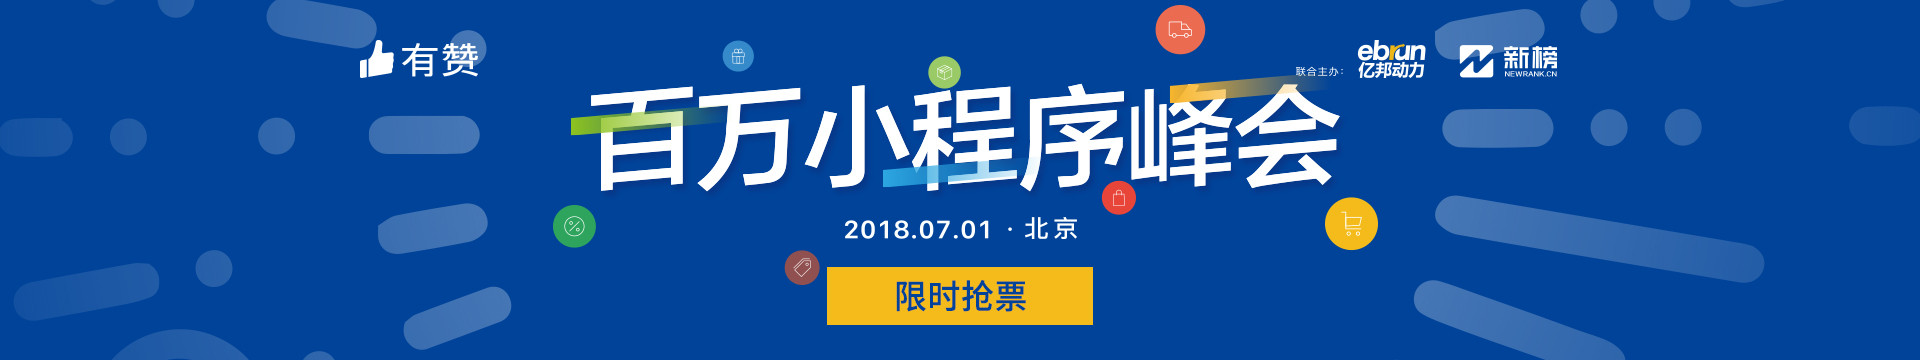 2018百万小程序峰会上海站暨亿邦小程序电商大会